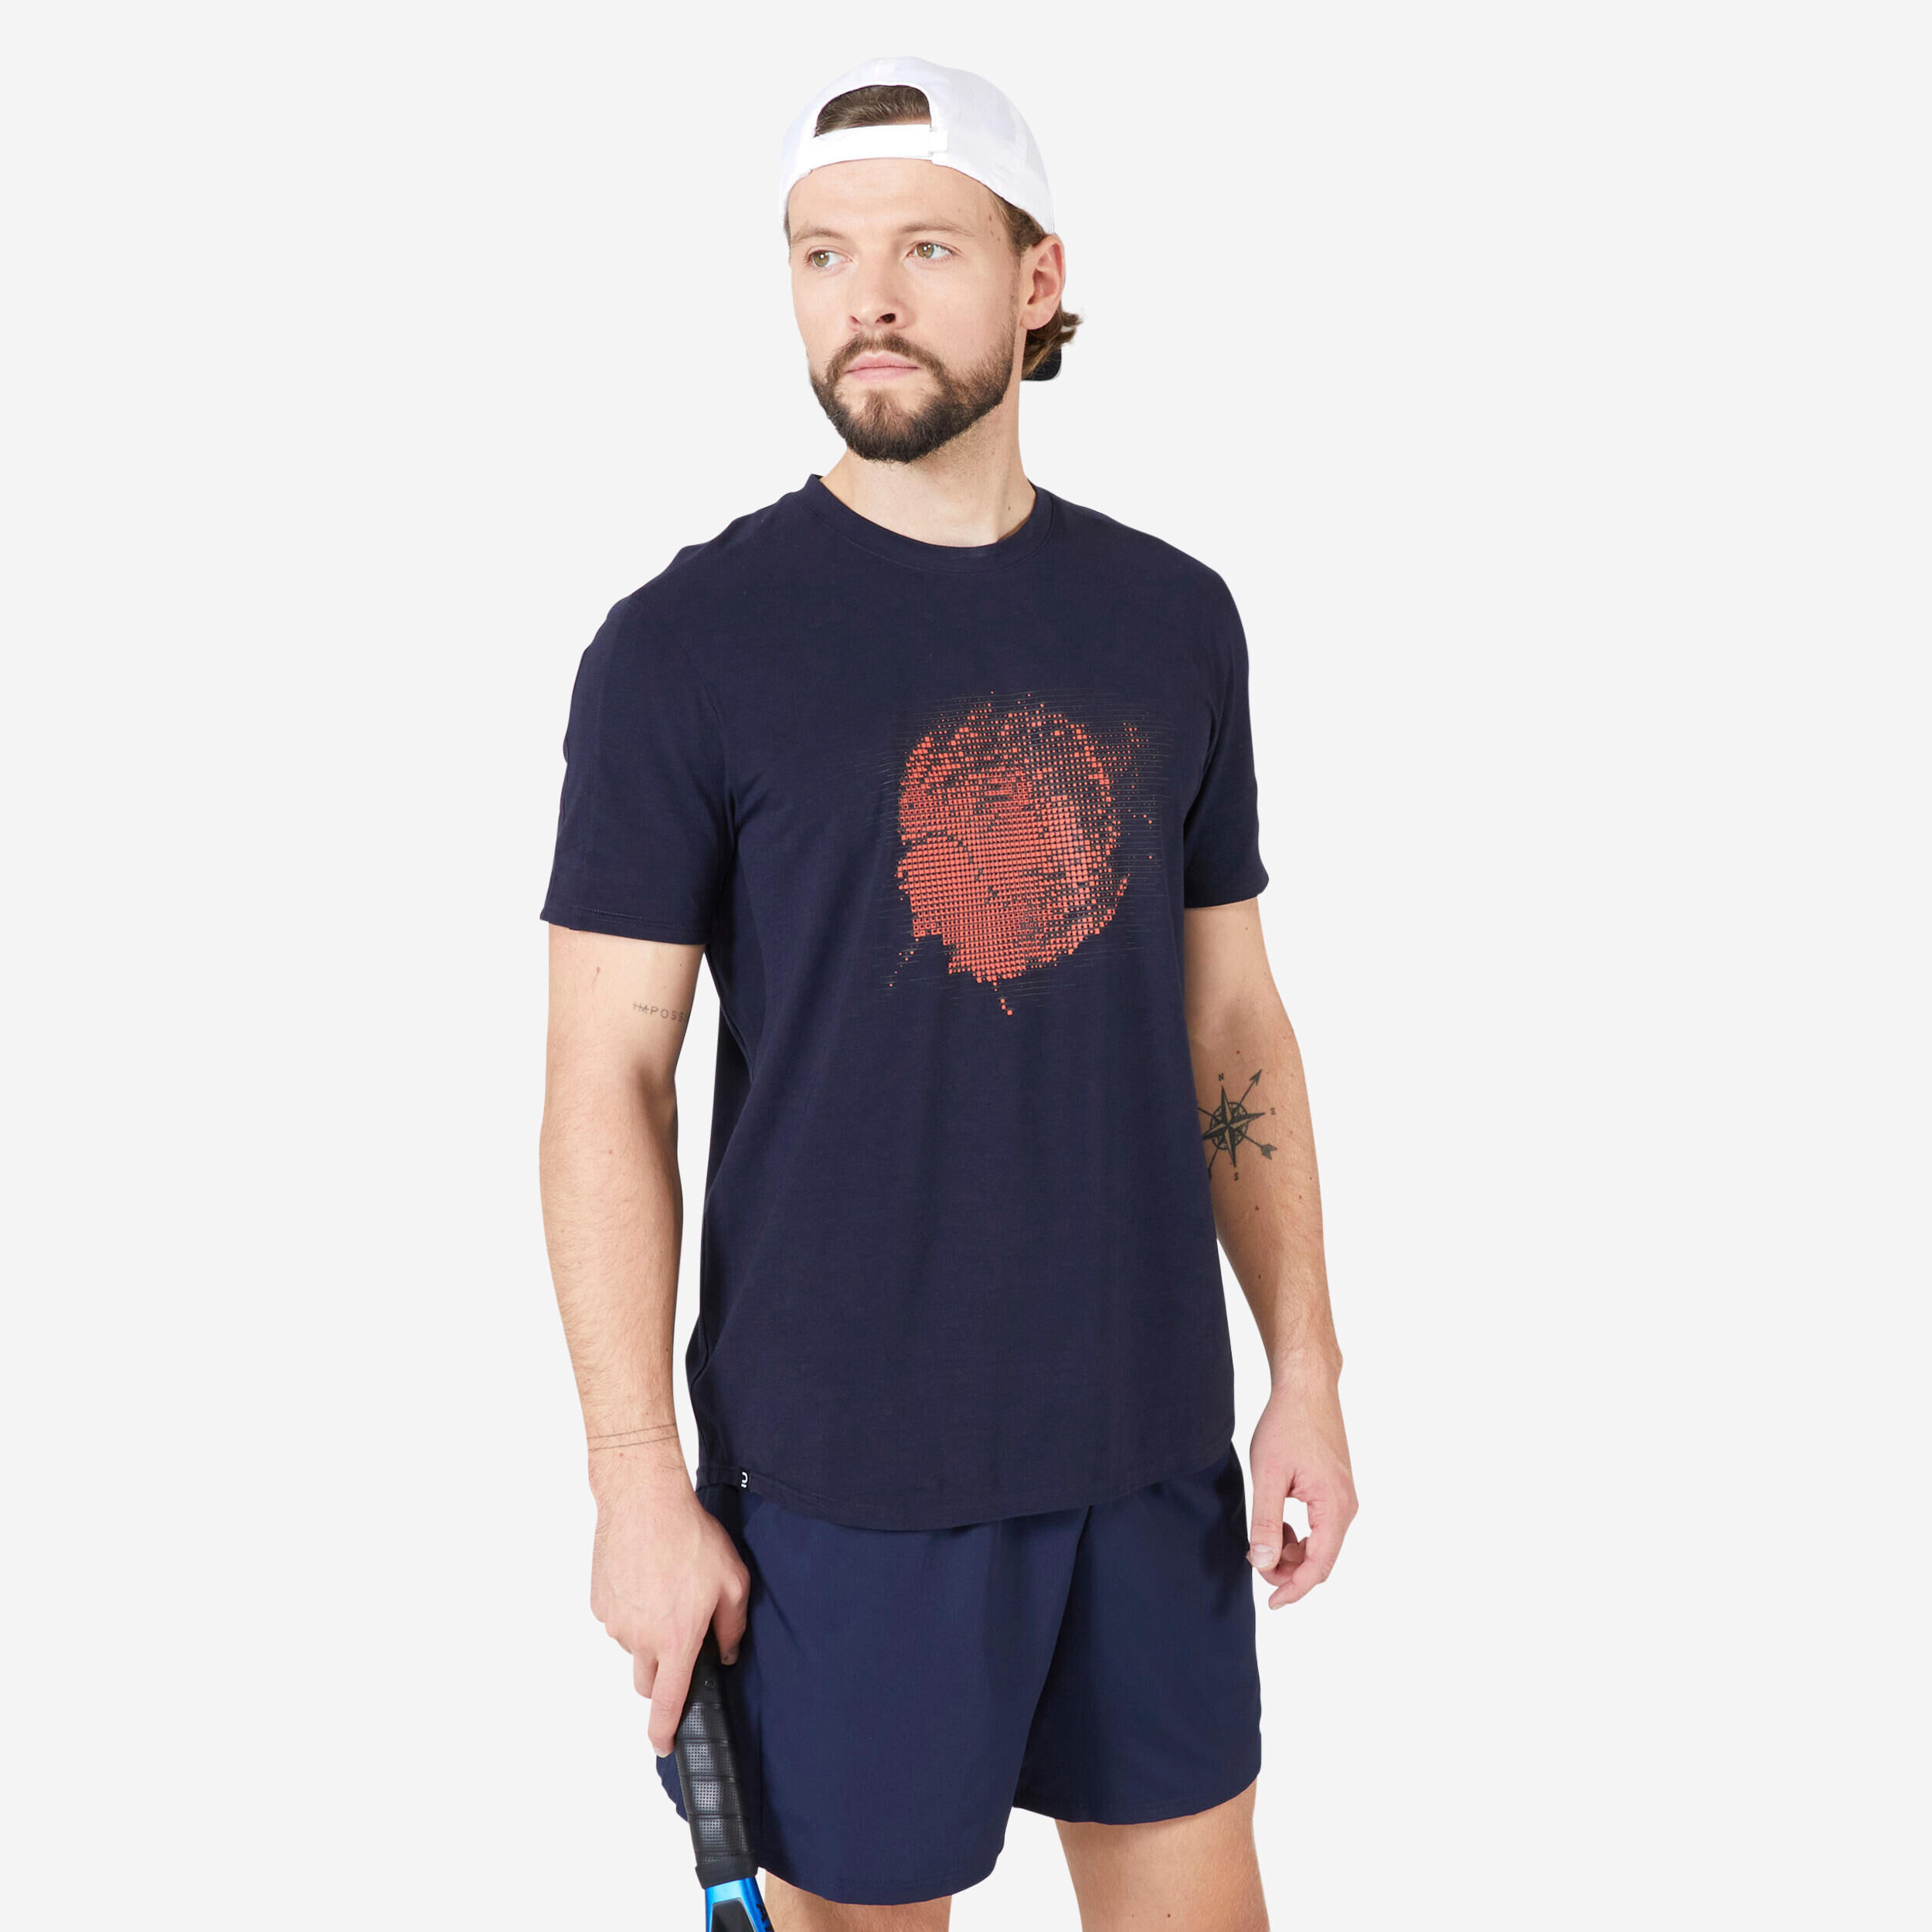 ARTENGO Men's Tennis T-Shirt Soft - Navy